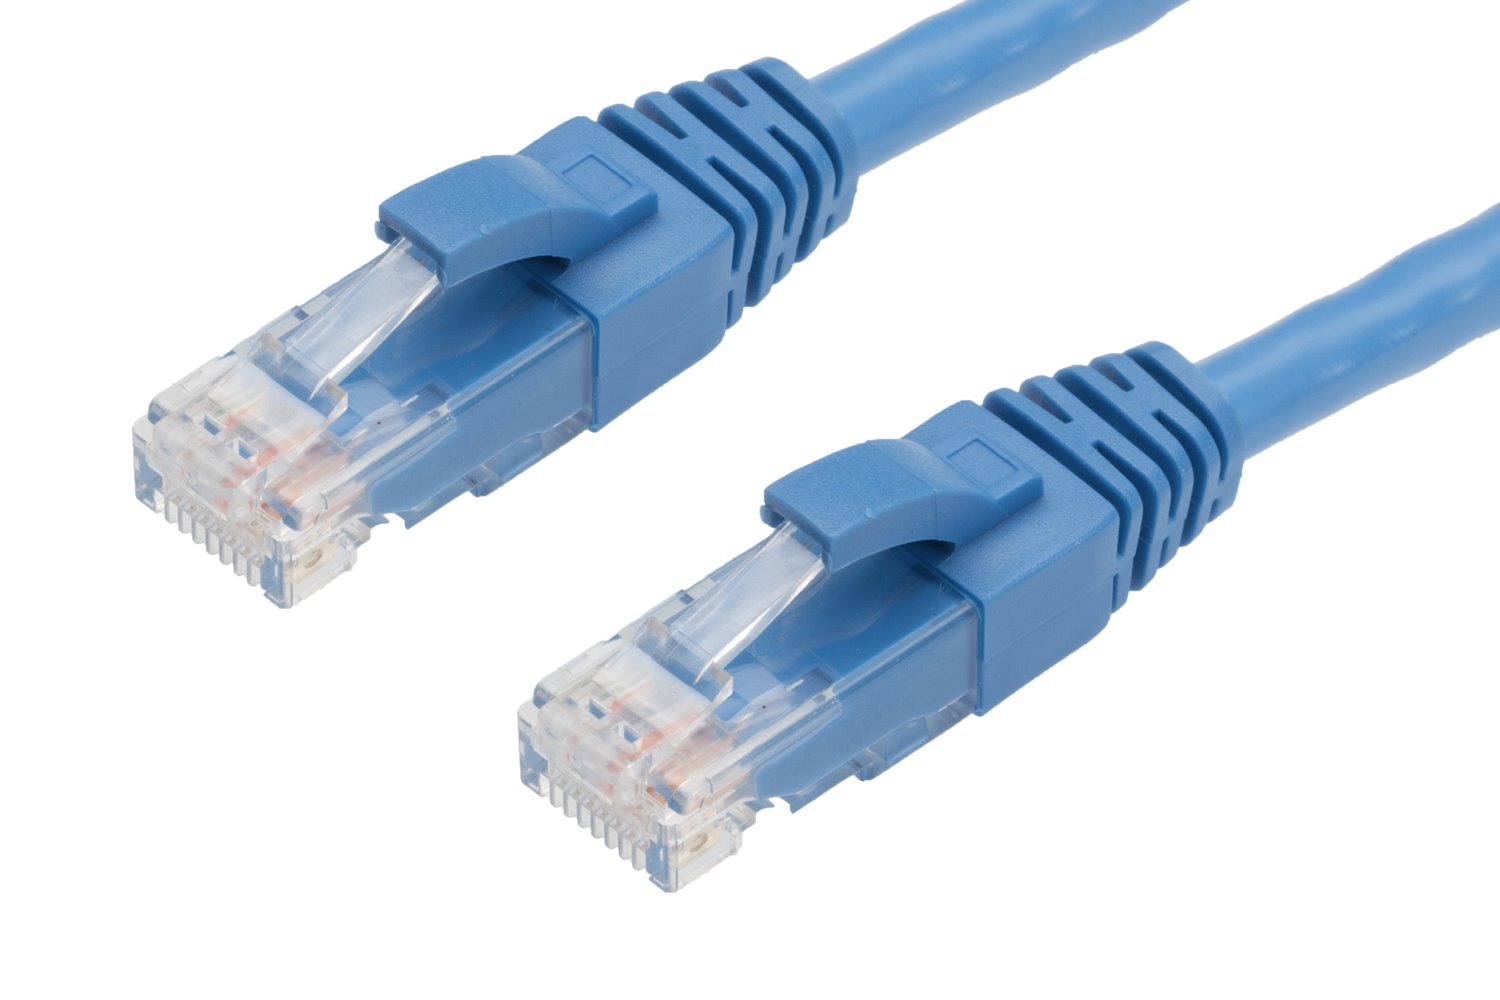 4Cabling 1.5M RJ45 Cat6 Ethernet Cable. Blue